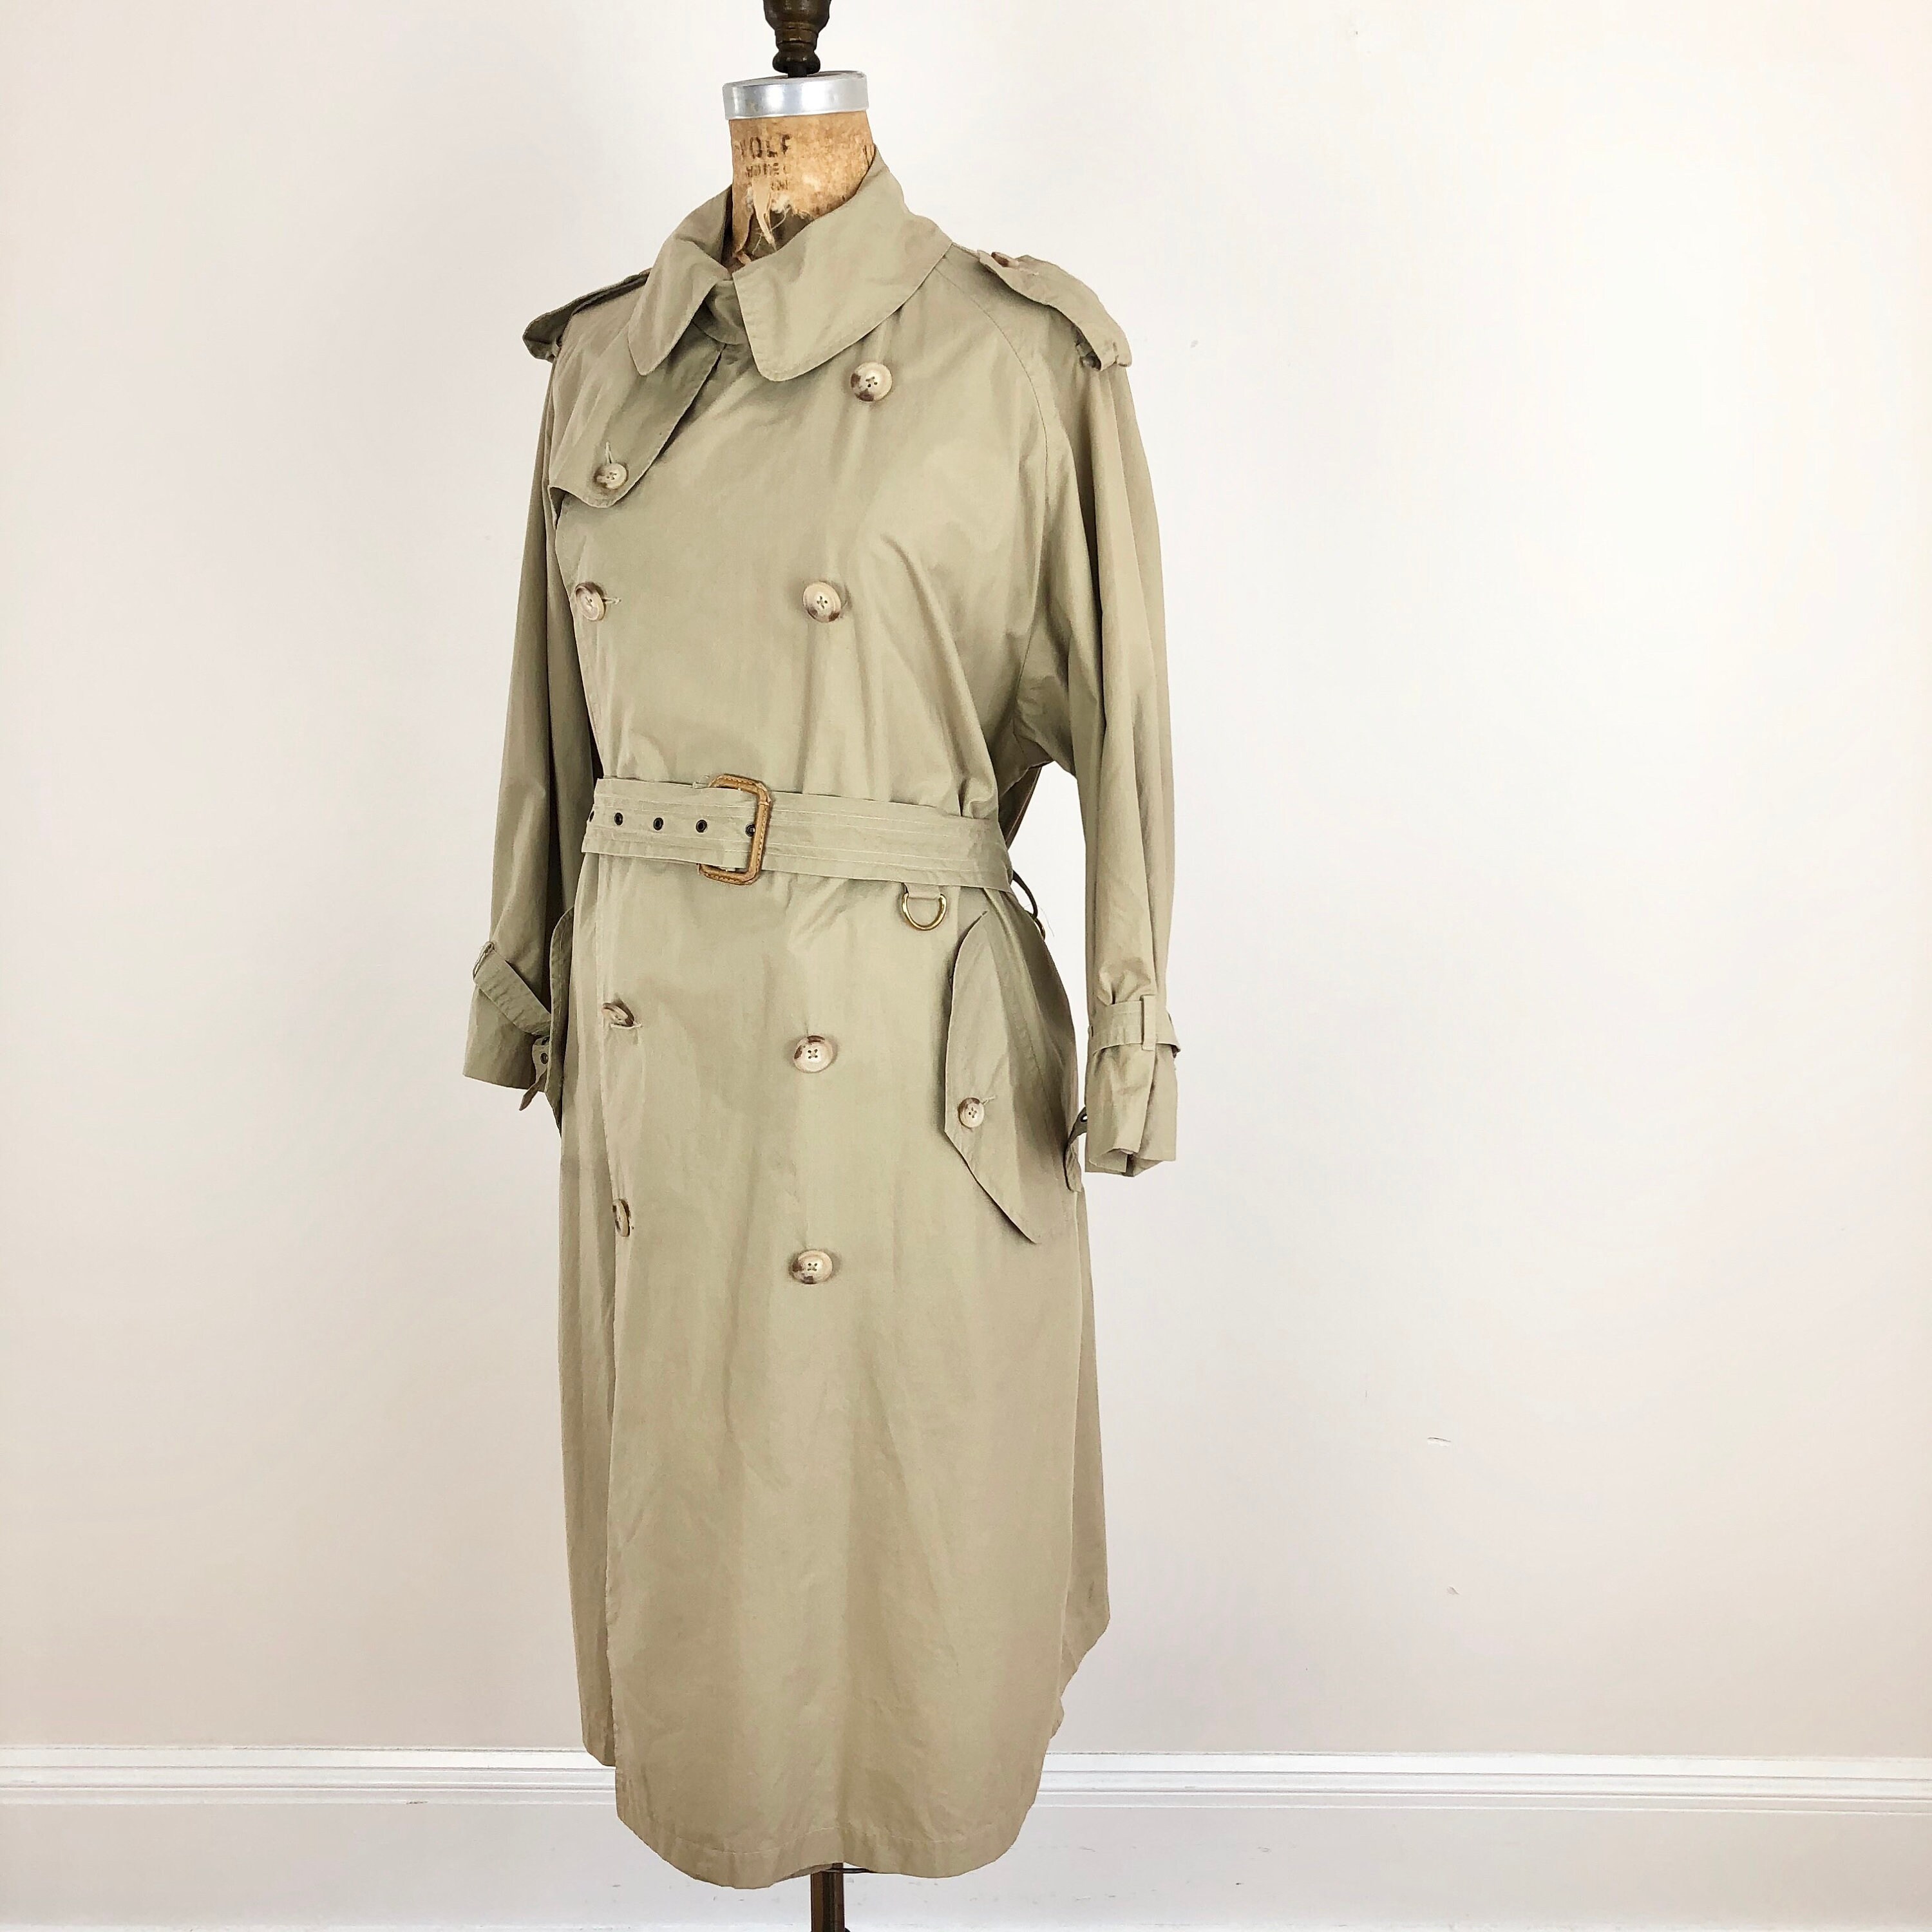 永久定番 Burberry 80s 一枚袖 coat trench vintage トレンチコート